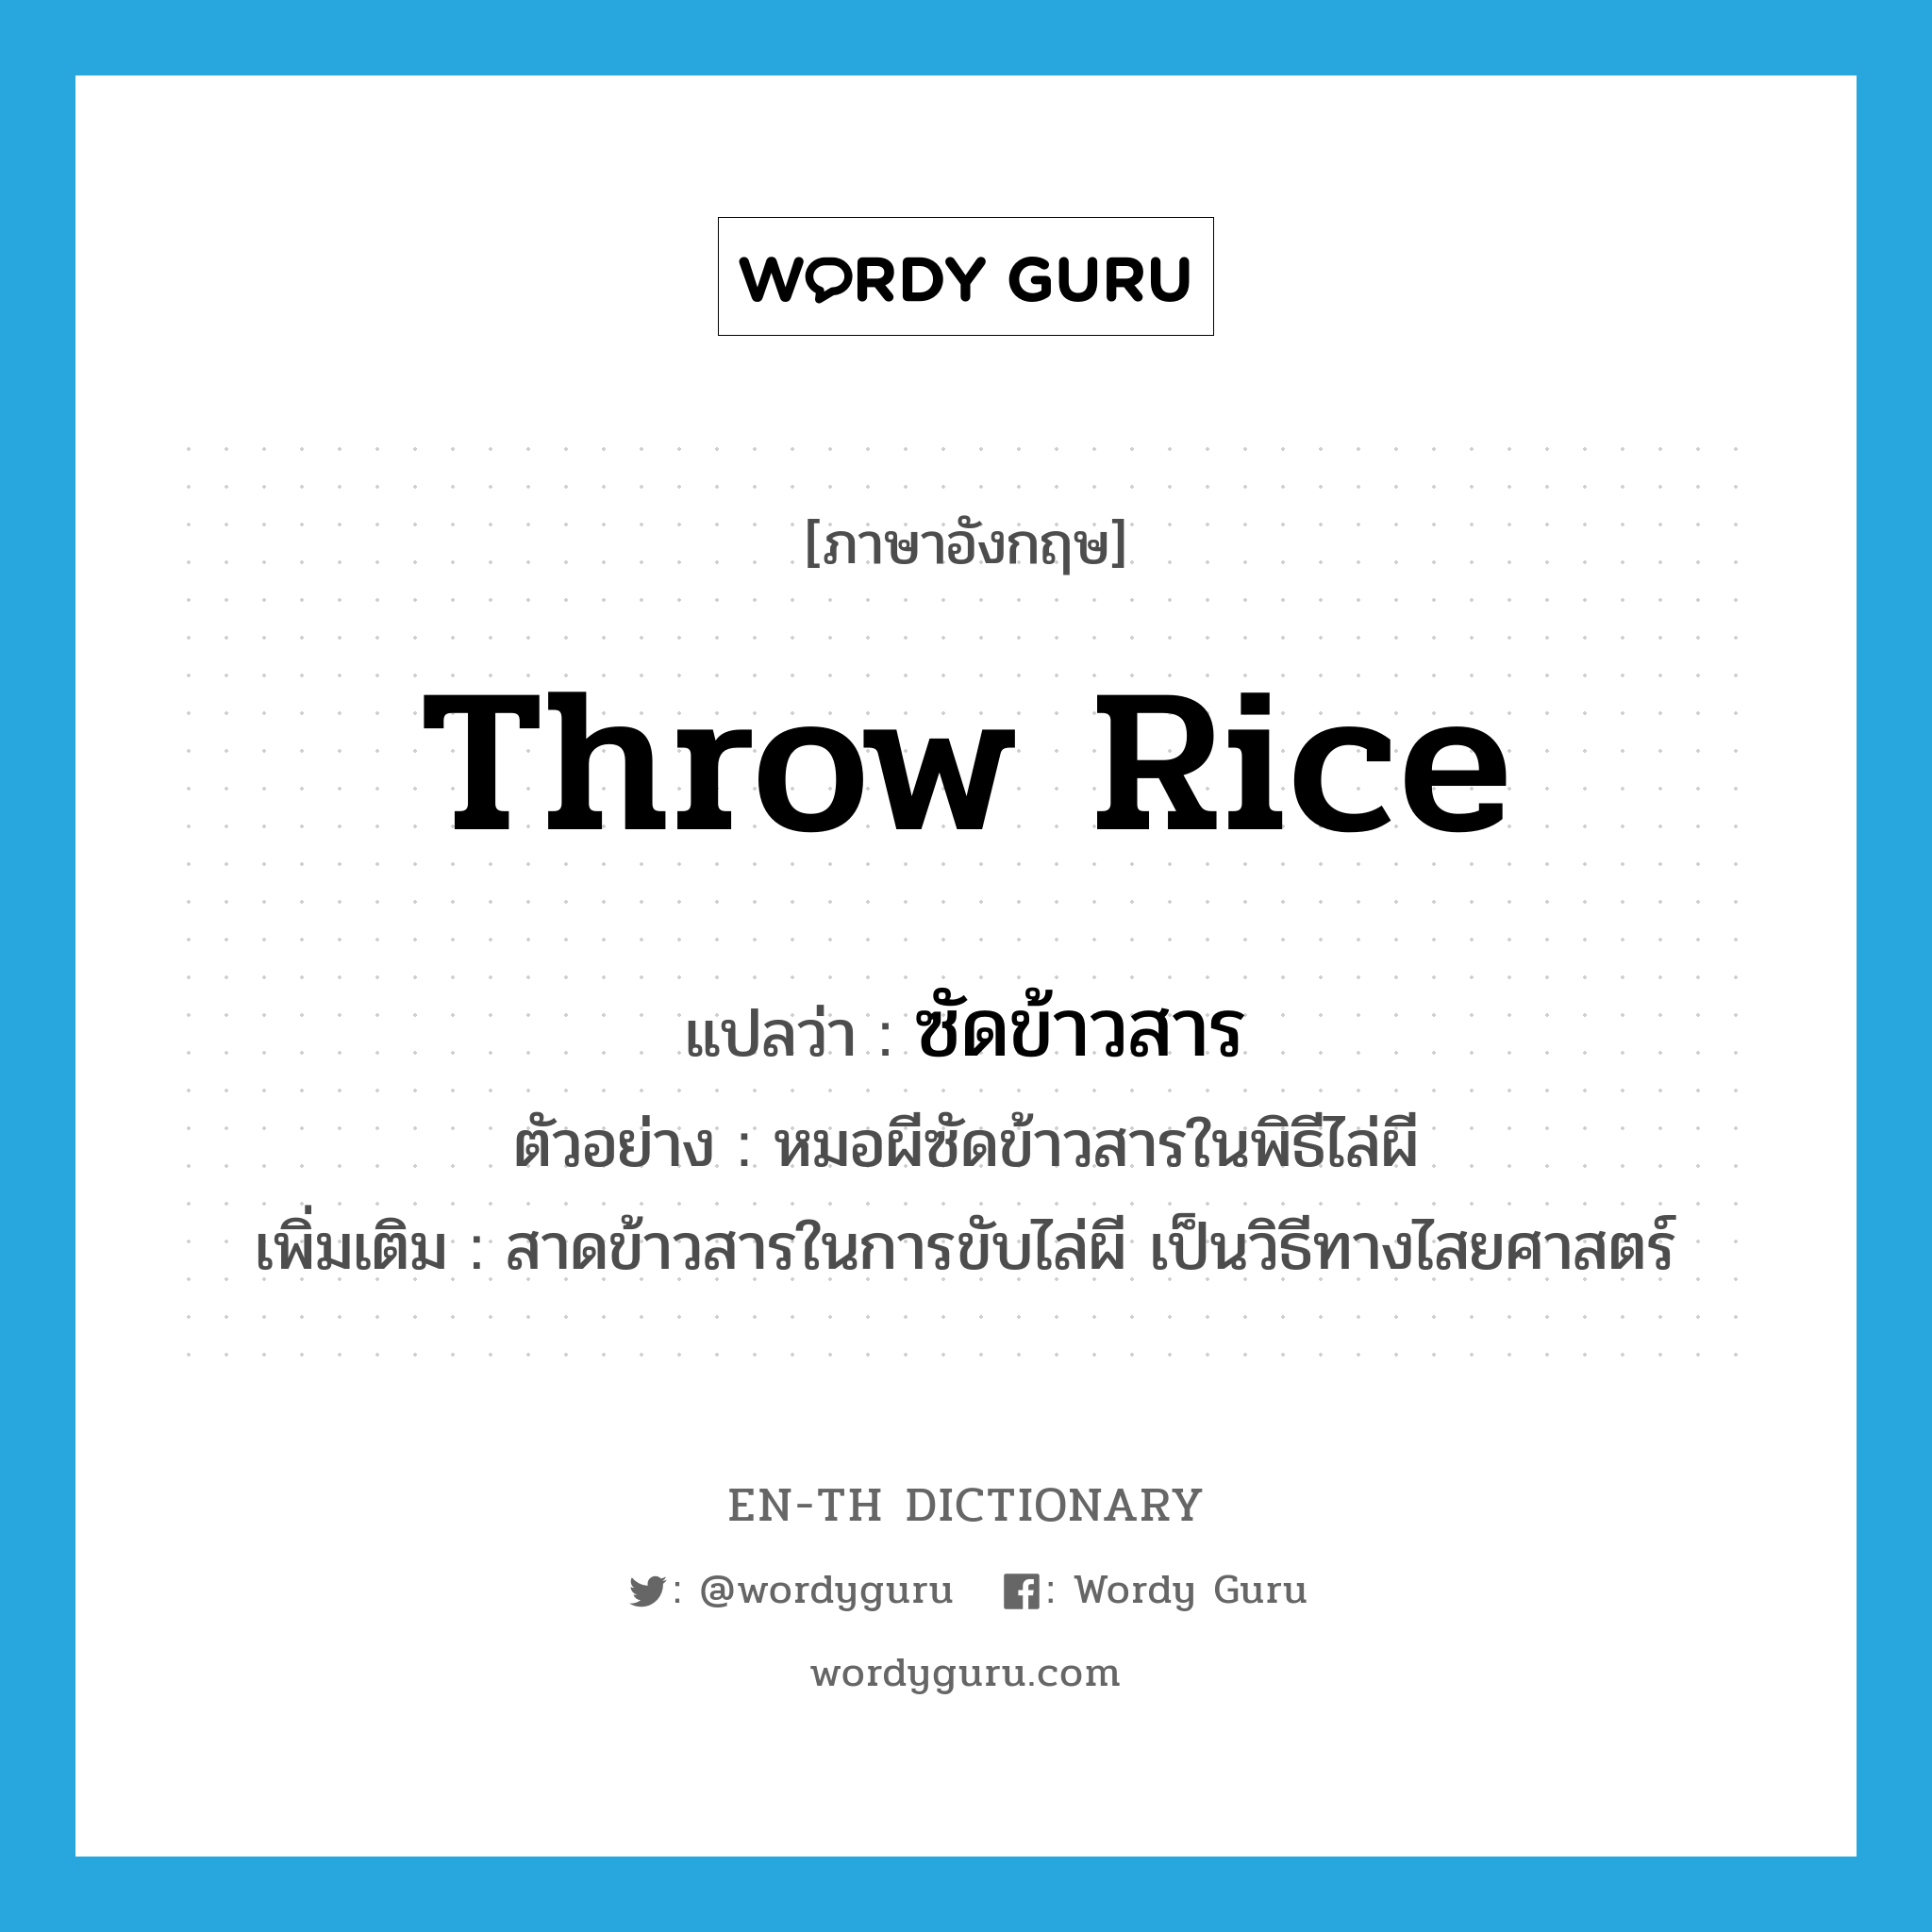 throw rice แปลว่า?, คำศัพท์ภาษาอังกฤษ throw rice แปลว่า ซัดข้าวสาร ประเภท V ตัวอย่าง หมอผีซัดข้าวสารในพิธีไล่ผี เพิ่มเติม สาดข้าวสารในการขับไล่ผี เป็นวิธีทางไสยศาสตร์ หมวด V